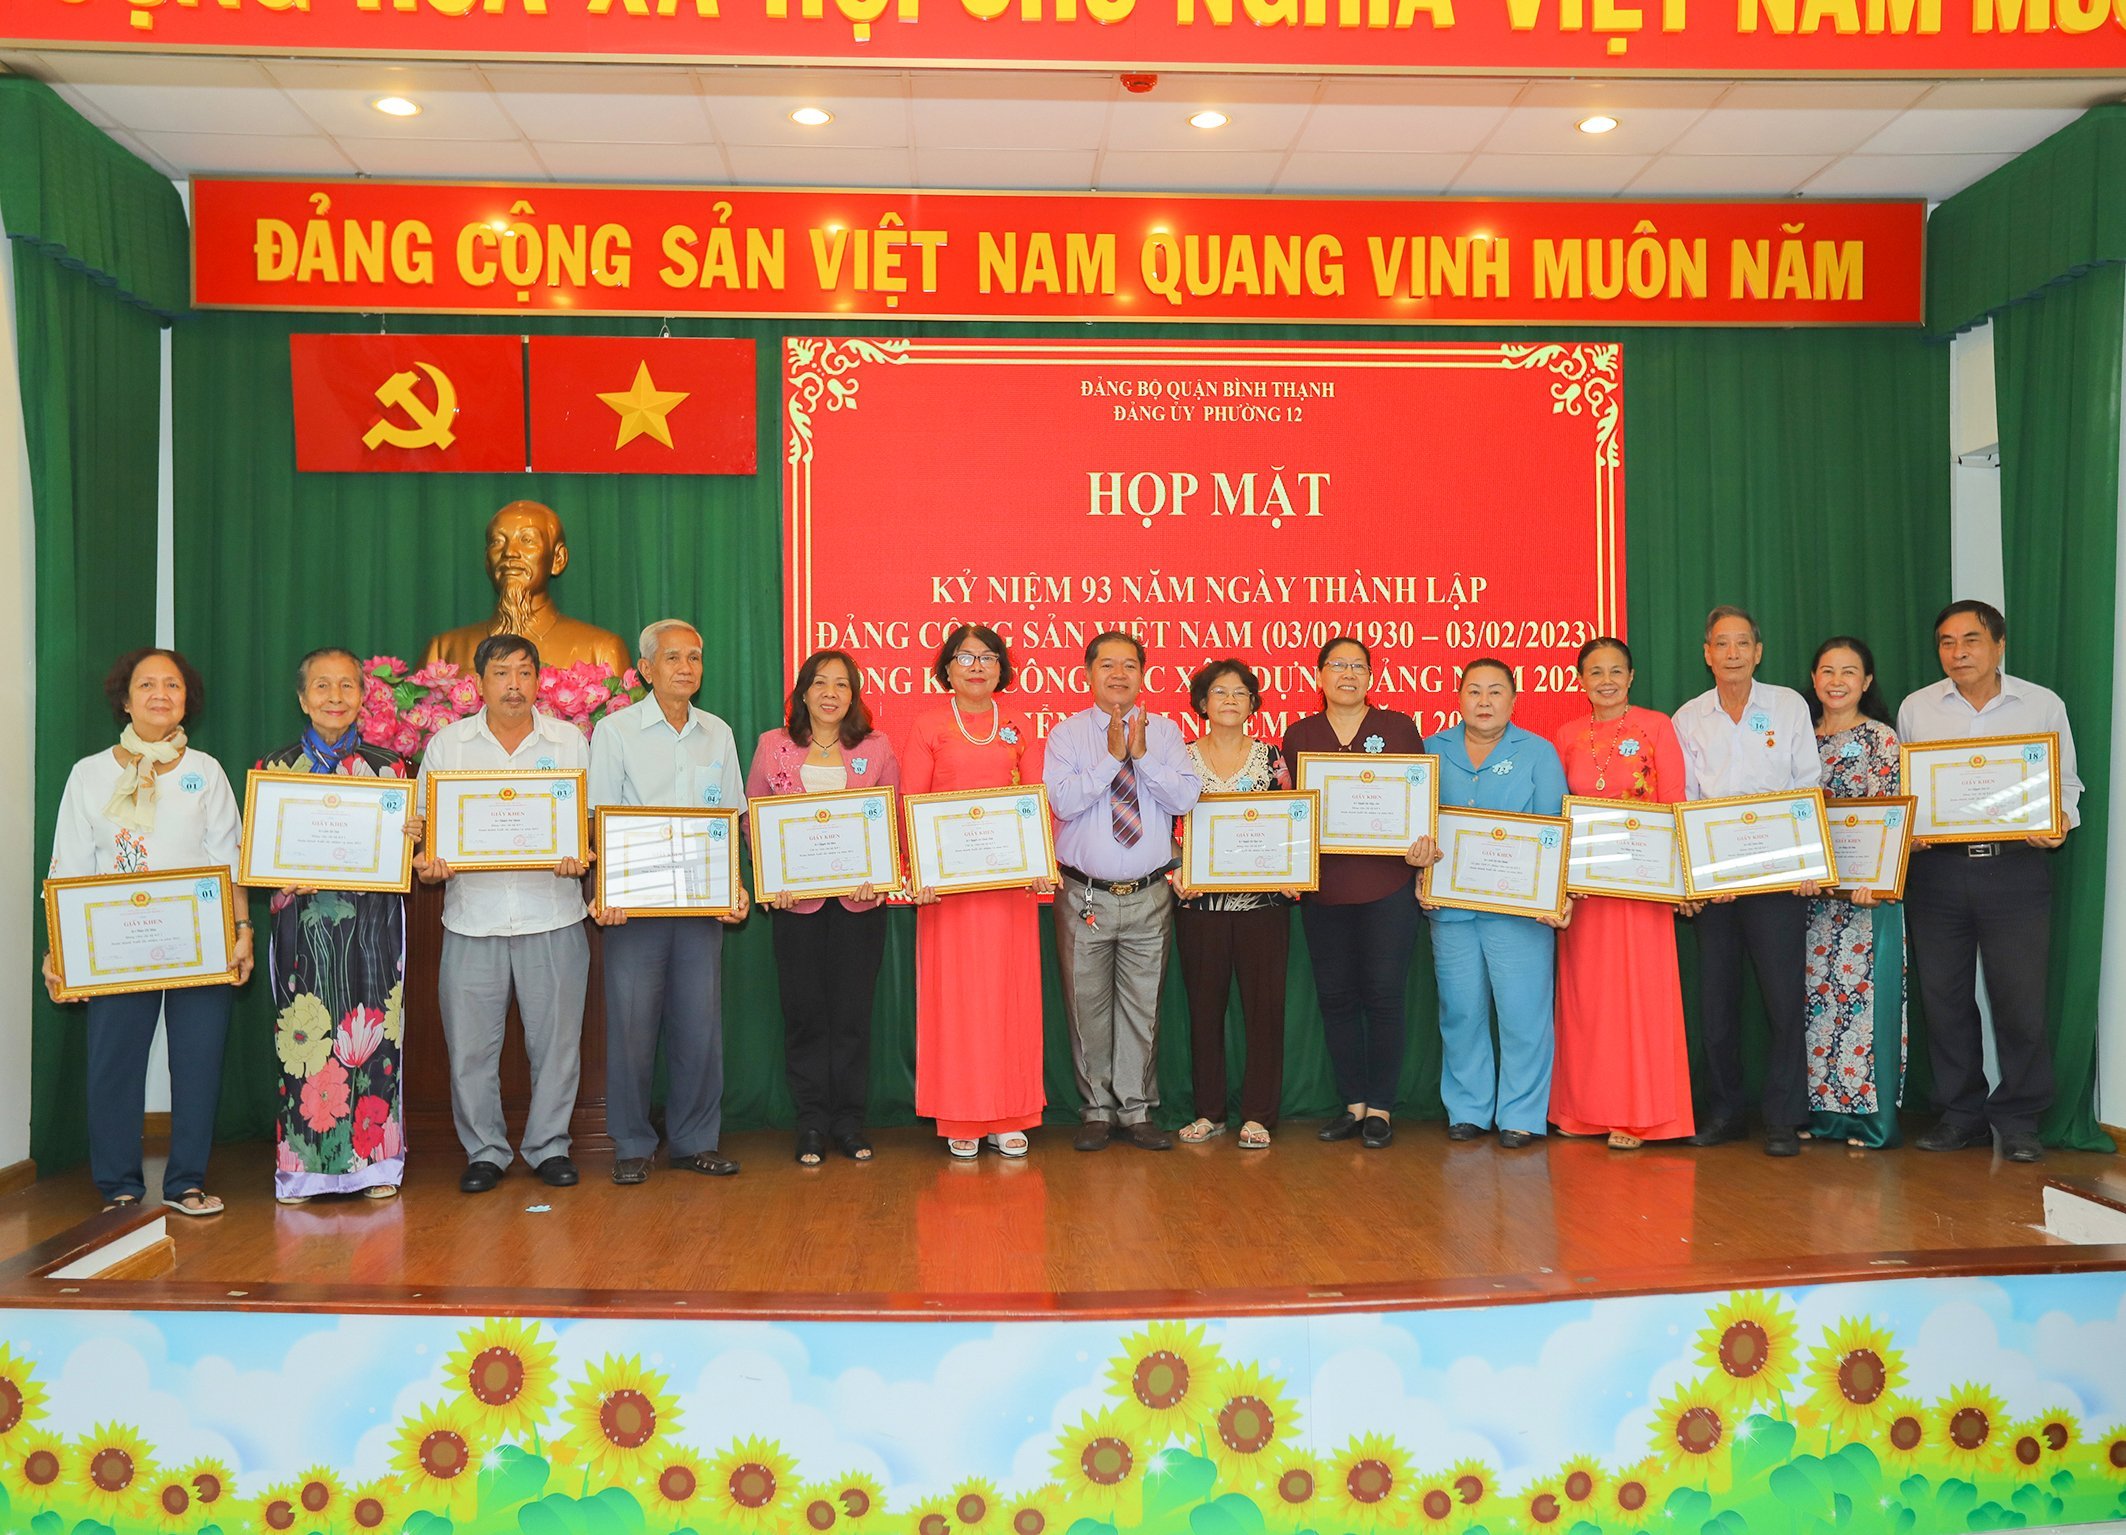 <strong>Họp mặt Kỷ niệm 93 năm ngày thành lập Đảng Cộng sản Việt Nam (03/02/1930 – 03/02/2023) và Hội nghị Tổng kết công tác Đảng năm 2022, triển khai phương hướng nhiệm vụ năm 2023</strong>